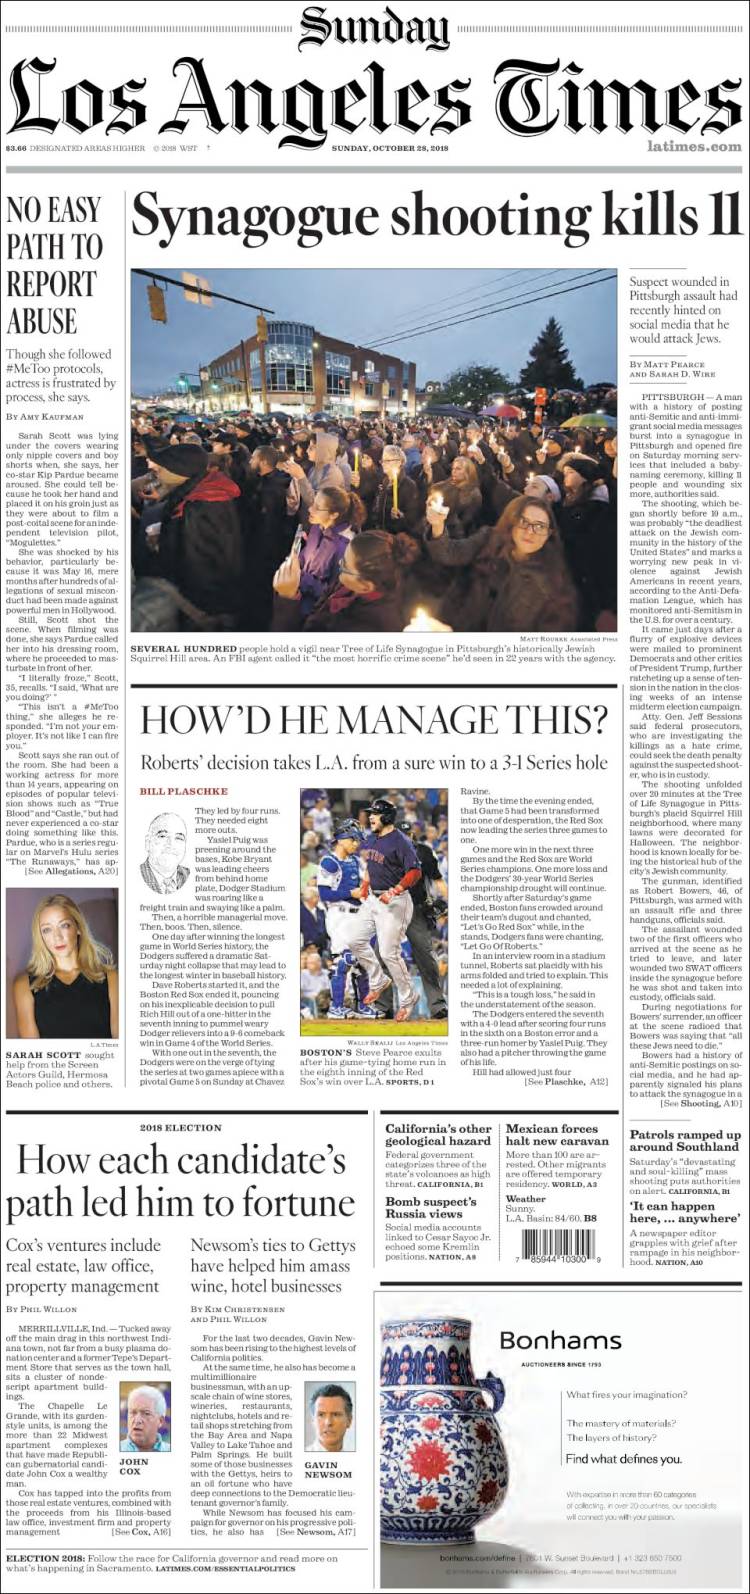 صفحه اول روزنامه لس آنجلس تایمز/ تیراندازی در کنیسه جان 11 نفر را گرفت